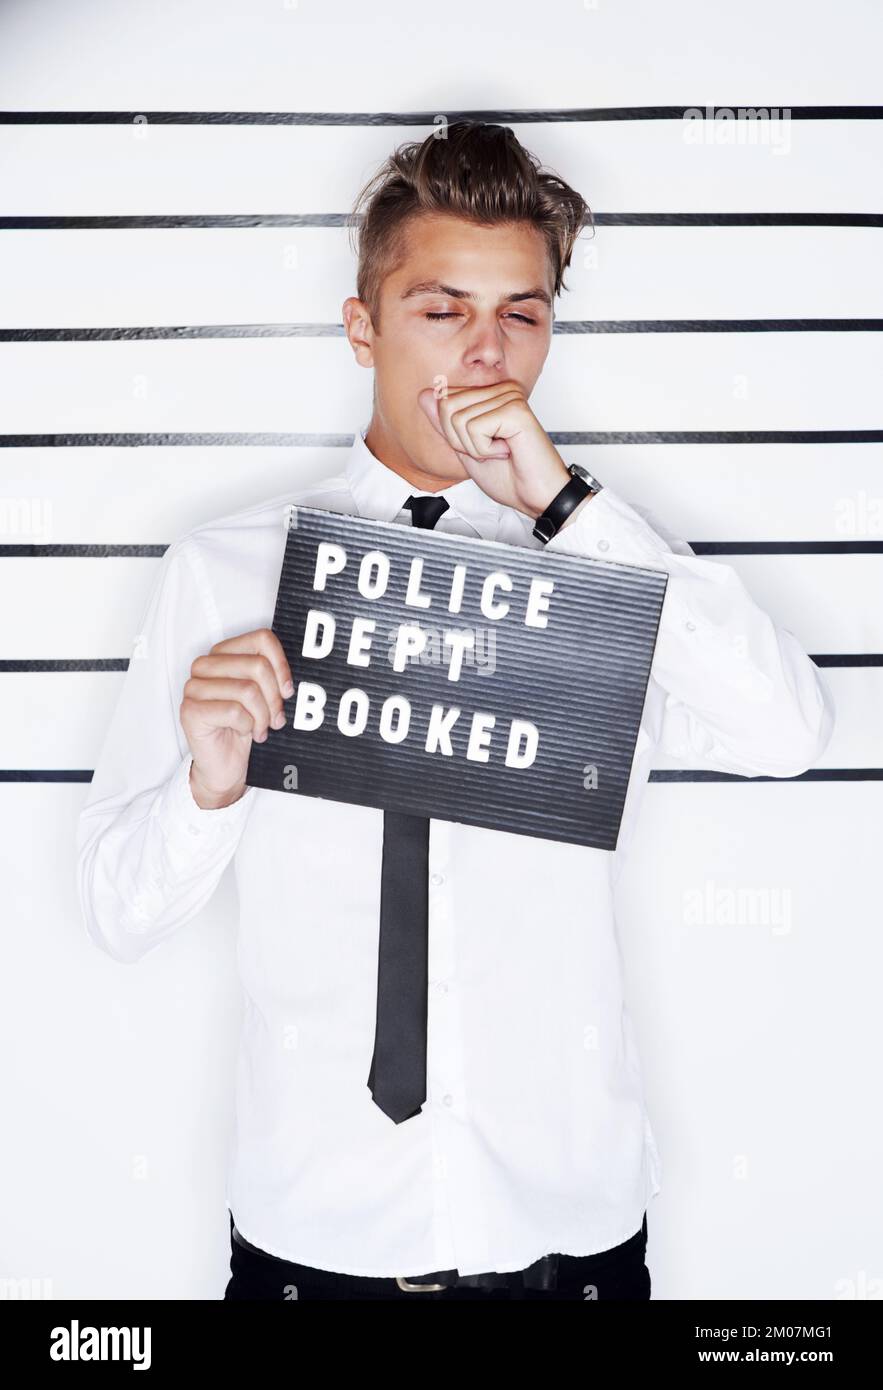 Erwischt. Verbrecherfoto eines jungen Mannes mit Hemd und Krawatte, der ein Polizeischild hochhält. Stockfoto